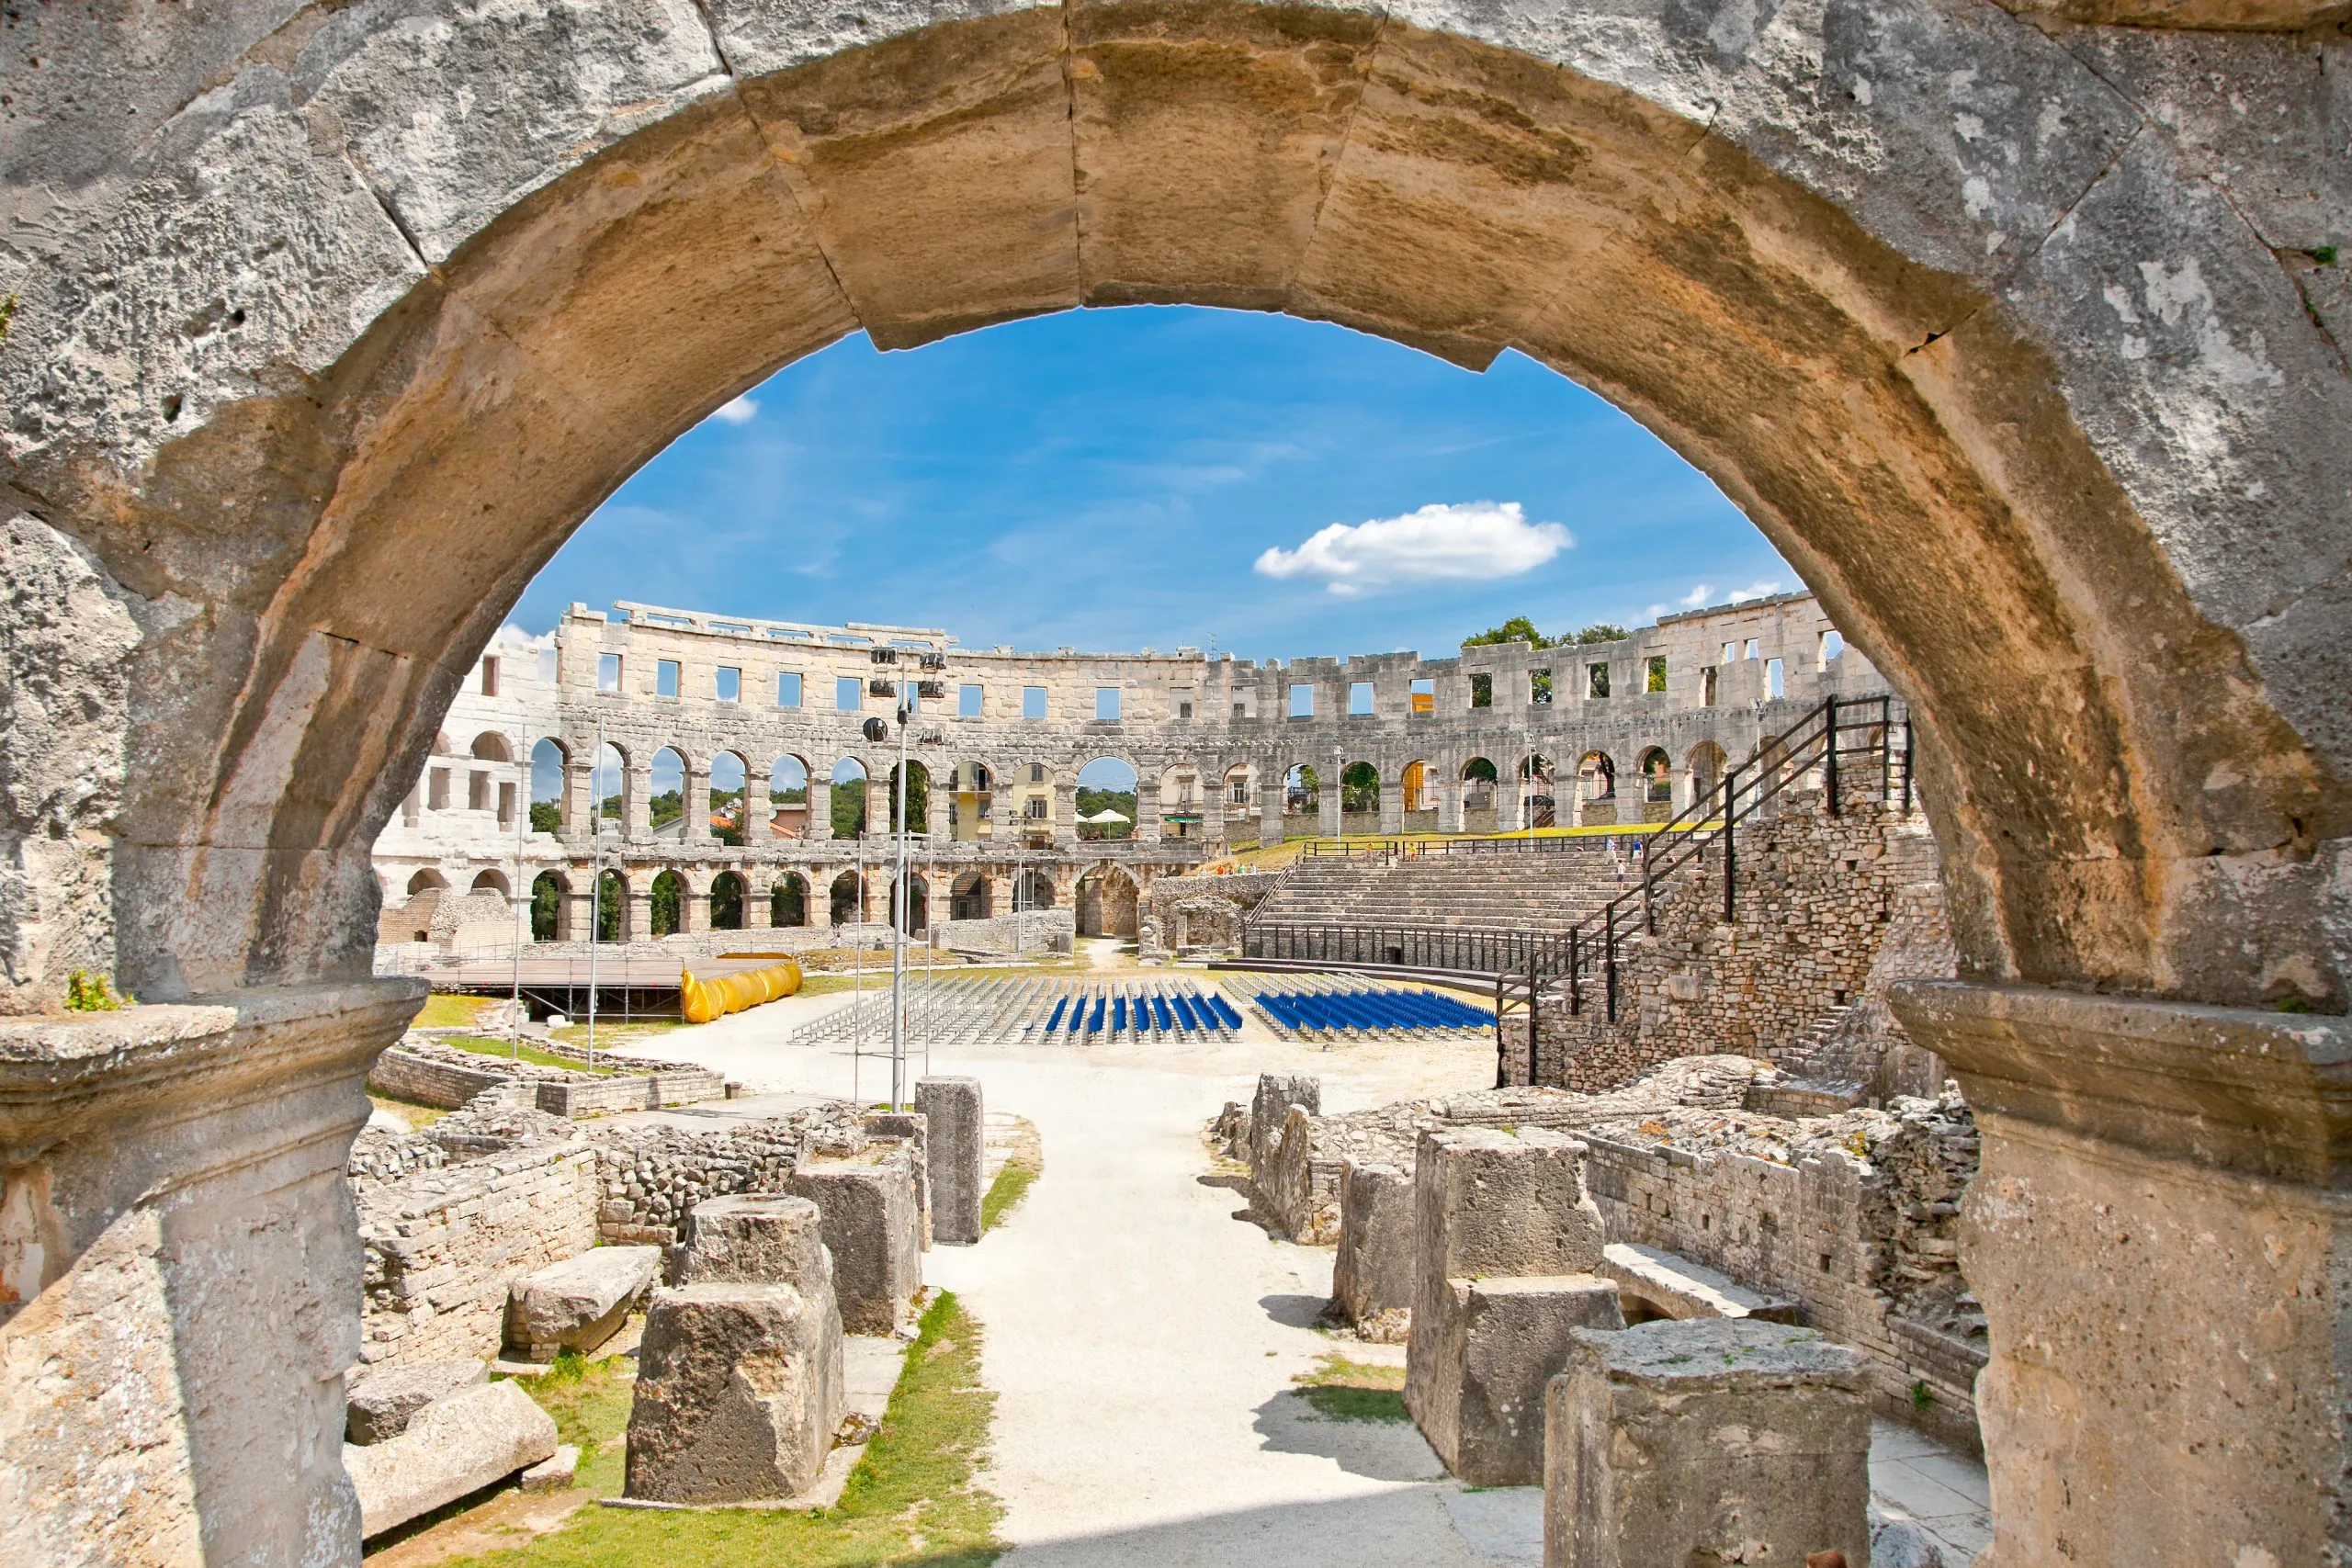 Romersk amfiteater (Arena) i Pula. Kroatien.